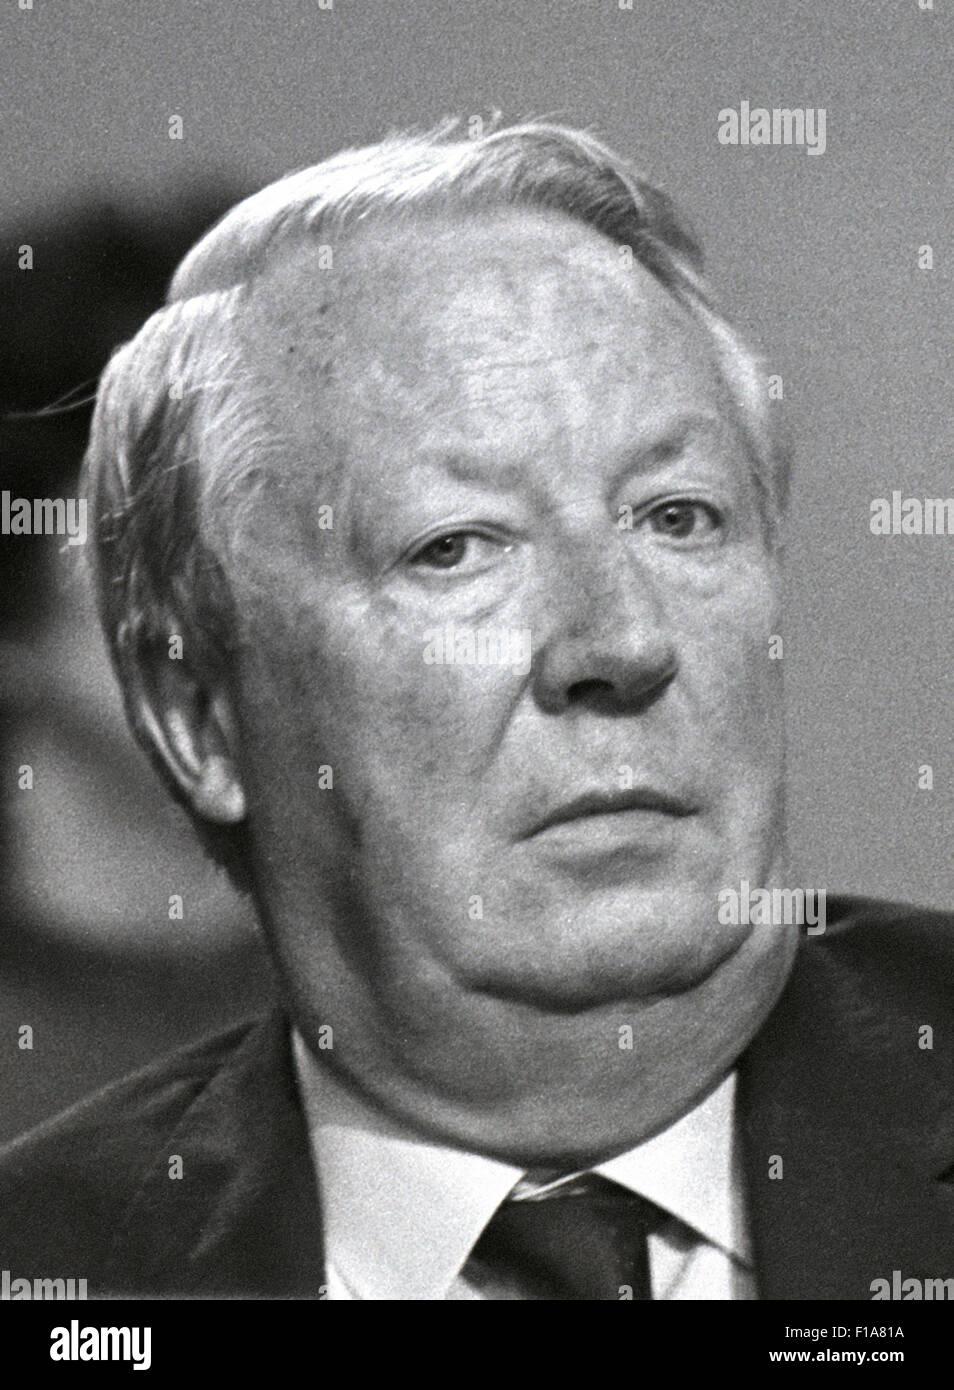 Edward Heath, Ted Heath, Sir Edward Heath Primo Ministro conservatore 1970 - 1974. Immagini esclusive da Daviid Cole dalla stampa Ritratto archivi di servizio. Foto Stock